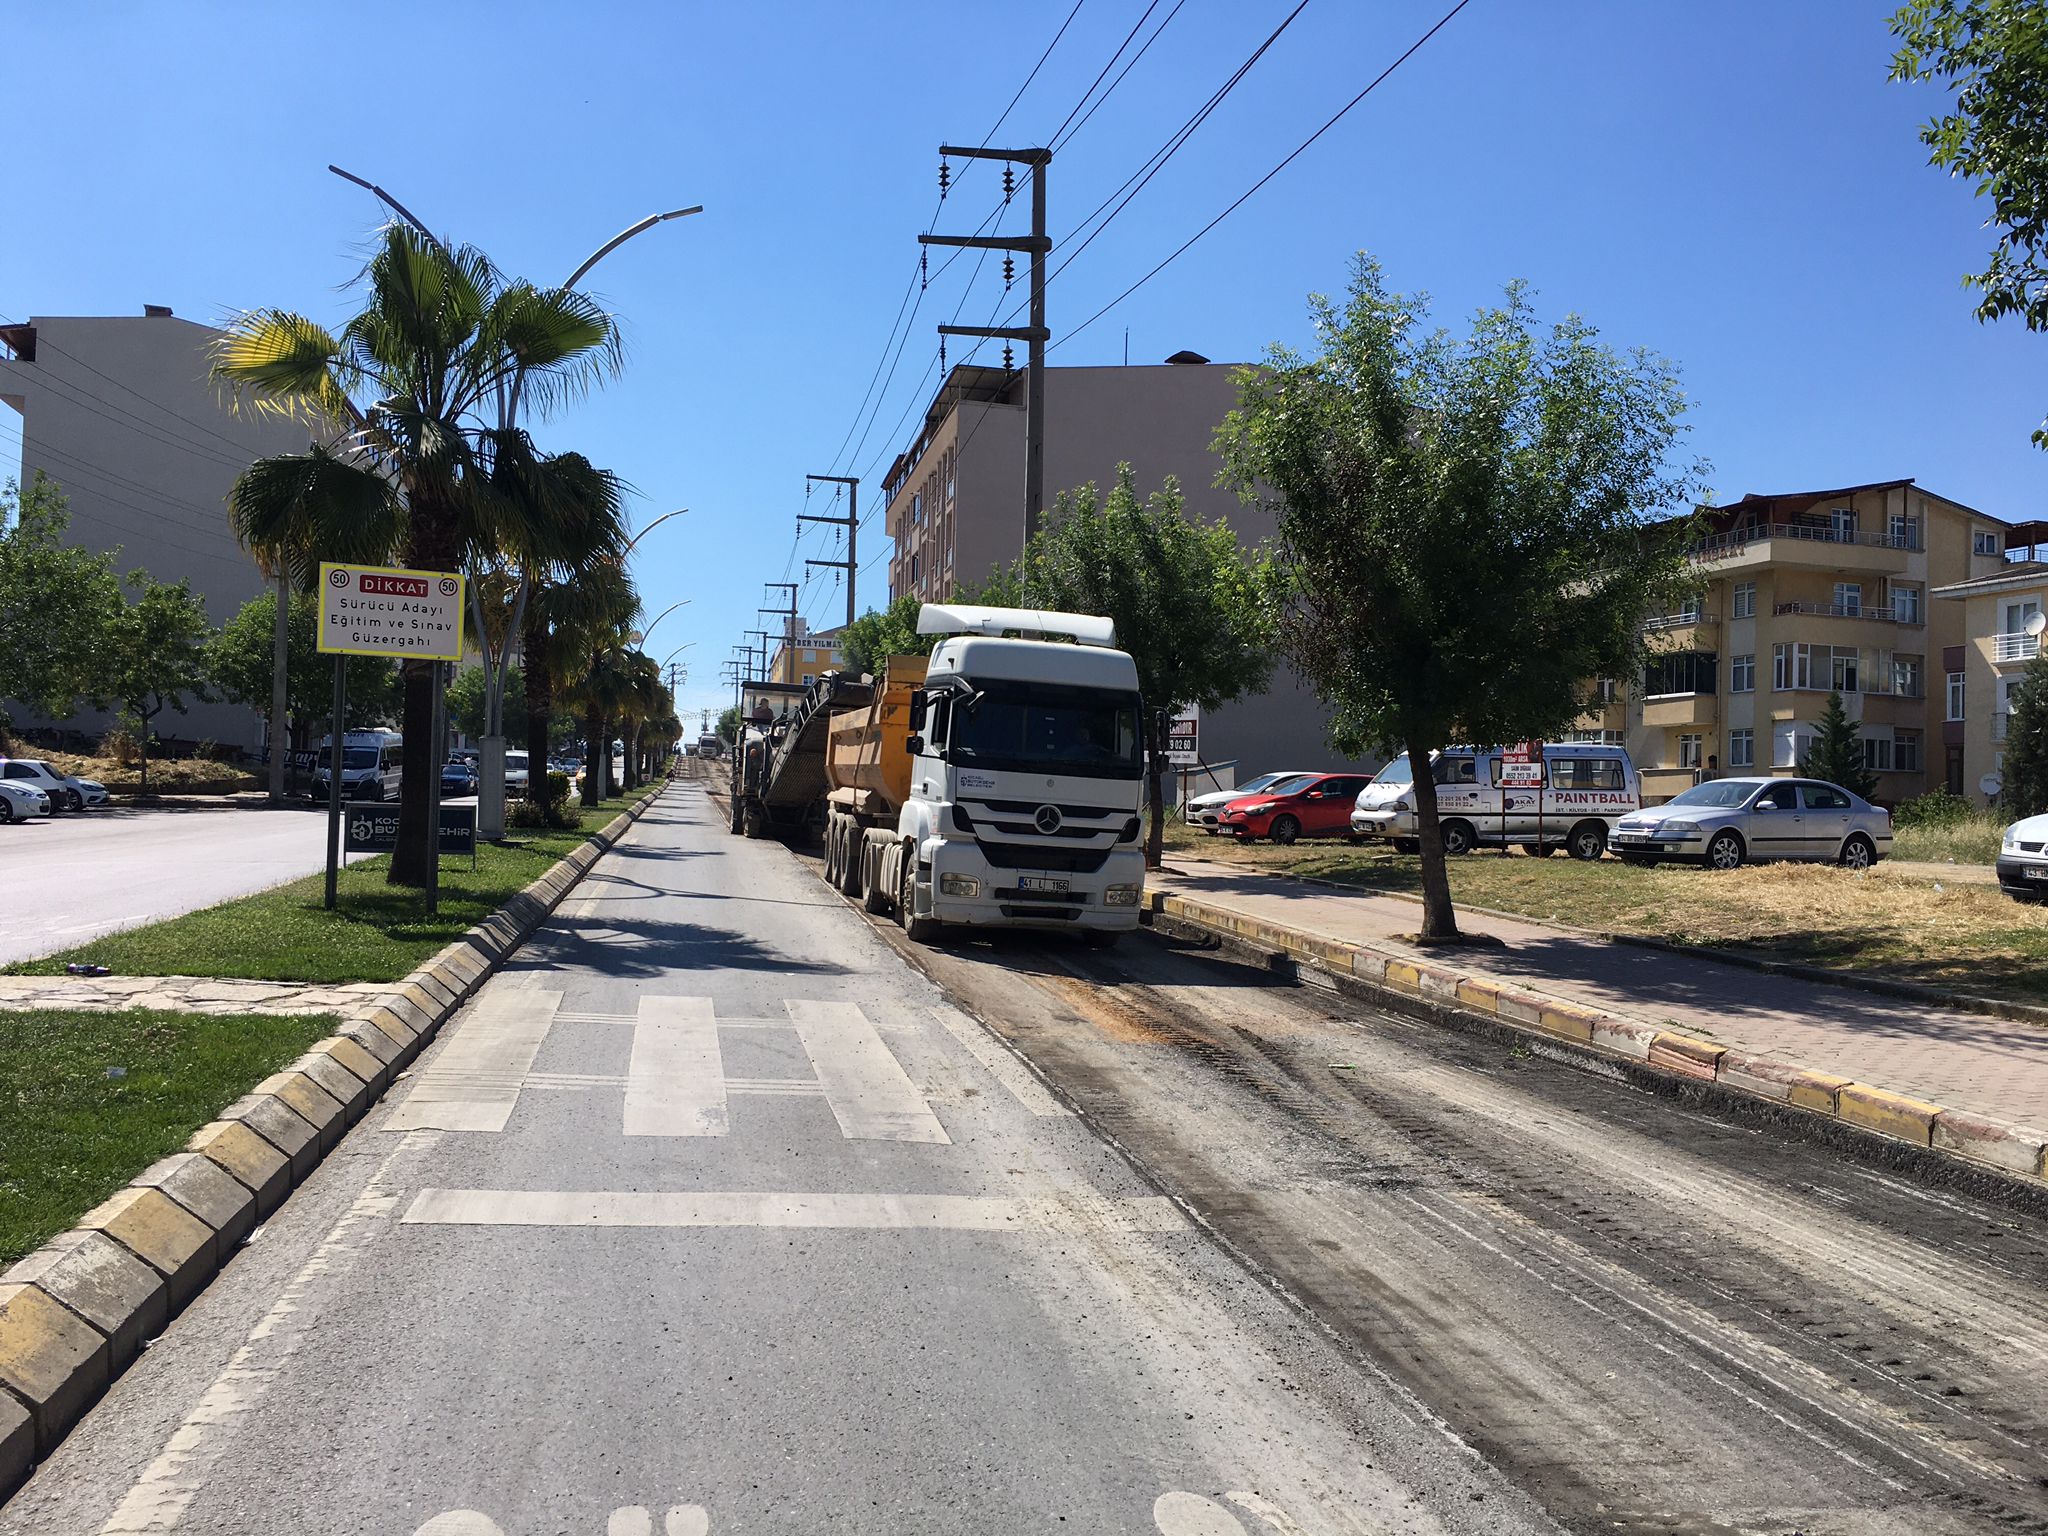 Darıca’daki önemli caddelerde yol onarımı yapılıyor